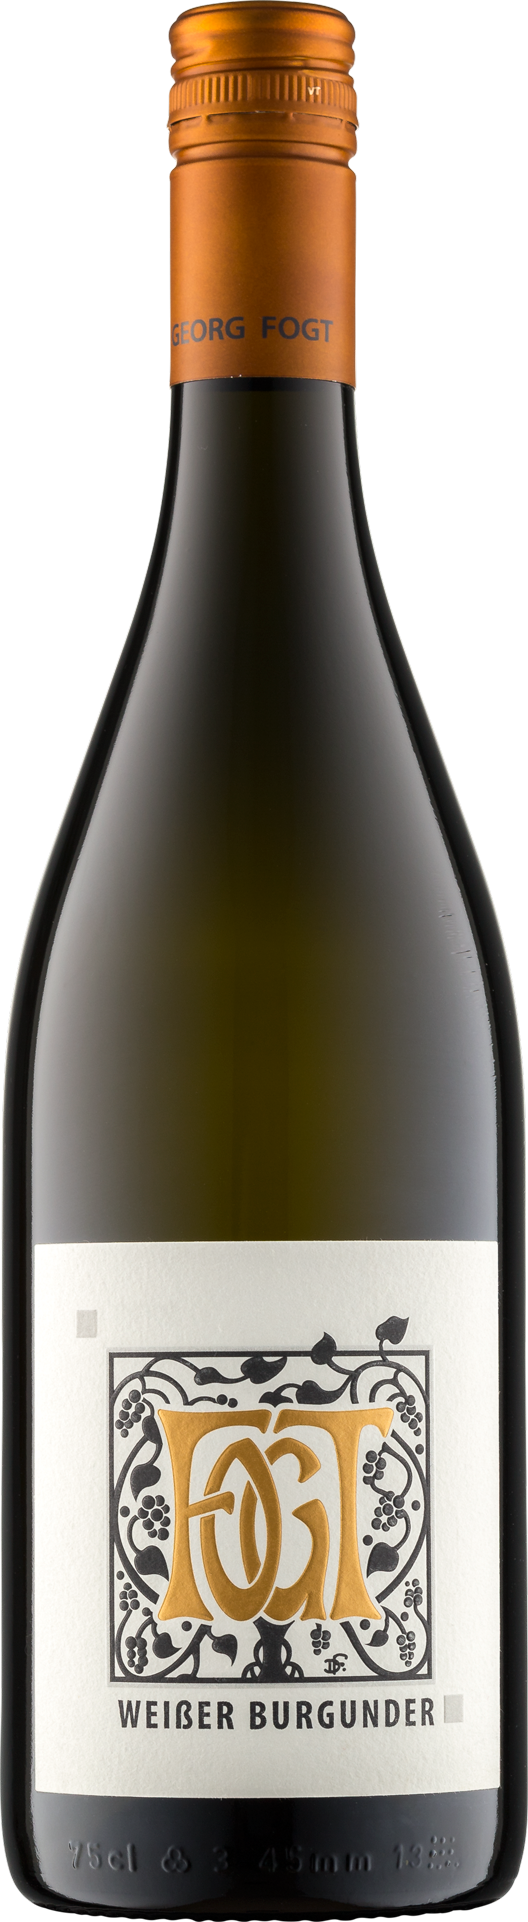 Weingut Fogt WeisserBurgunder(Pinot Blanc) Trocken 2018